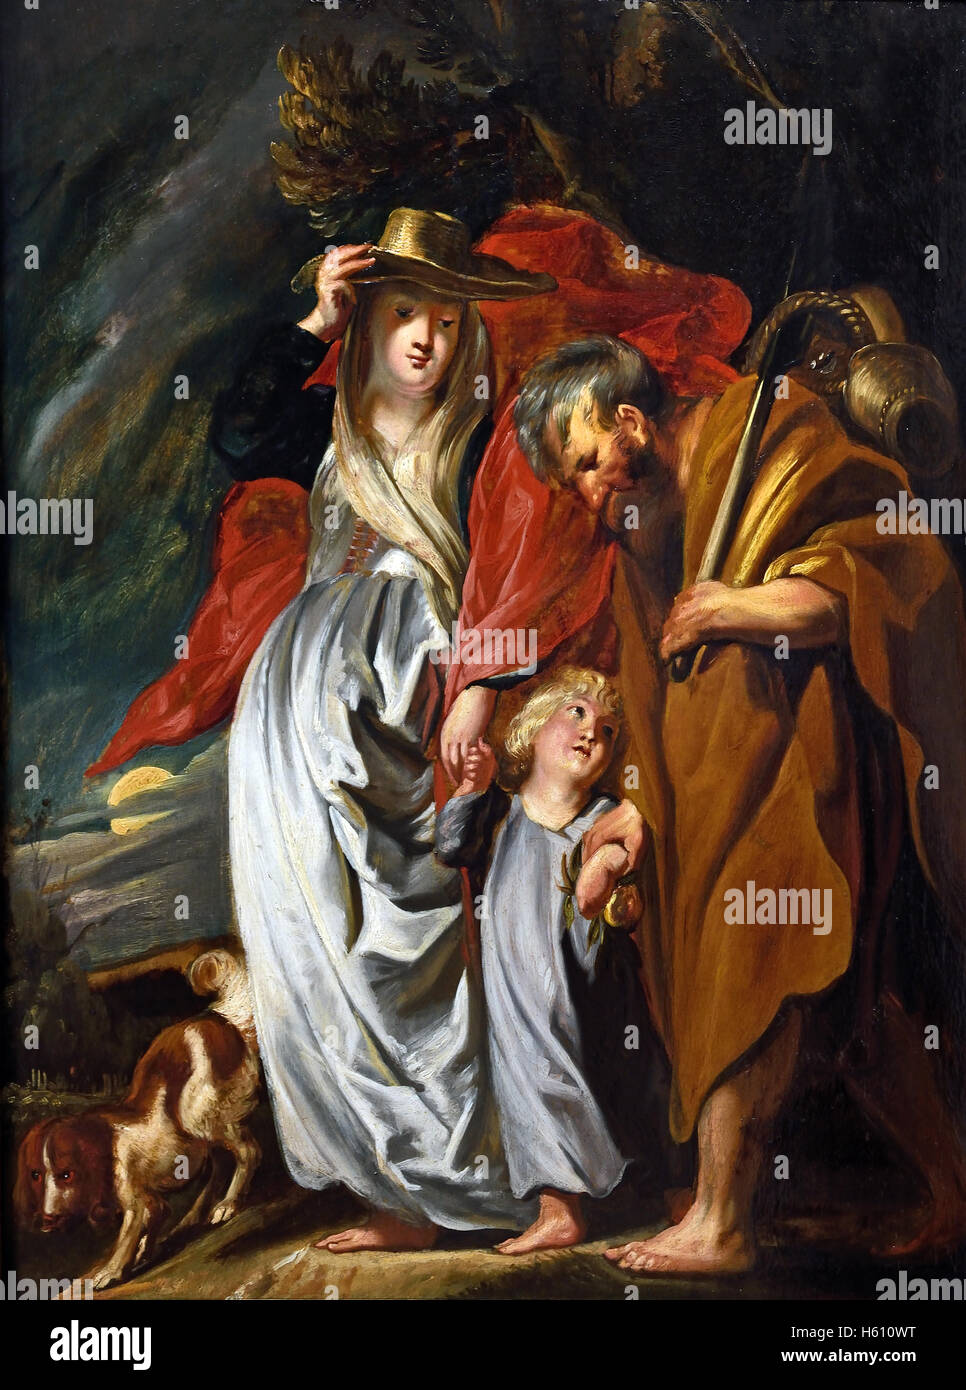 Le retour de la Sainte Famille d'Egypte 1616 Jacob Jordaens (1593 - 1678) peintre baroque flamand Belgique Belge Banque D'Images